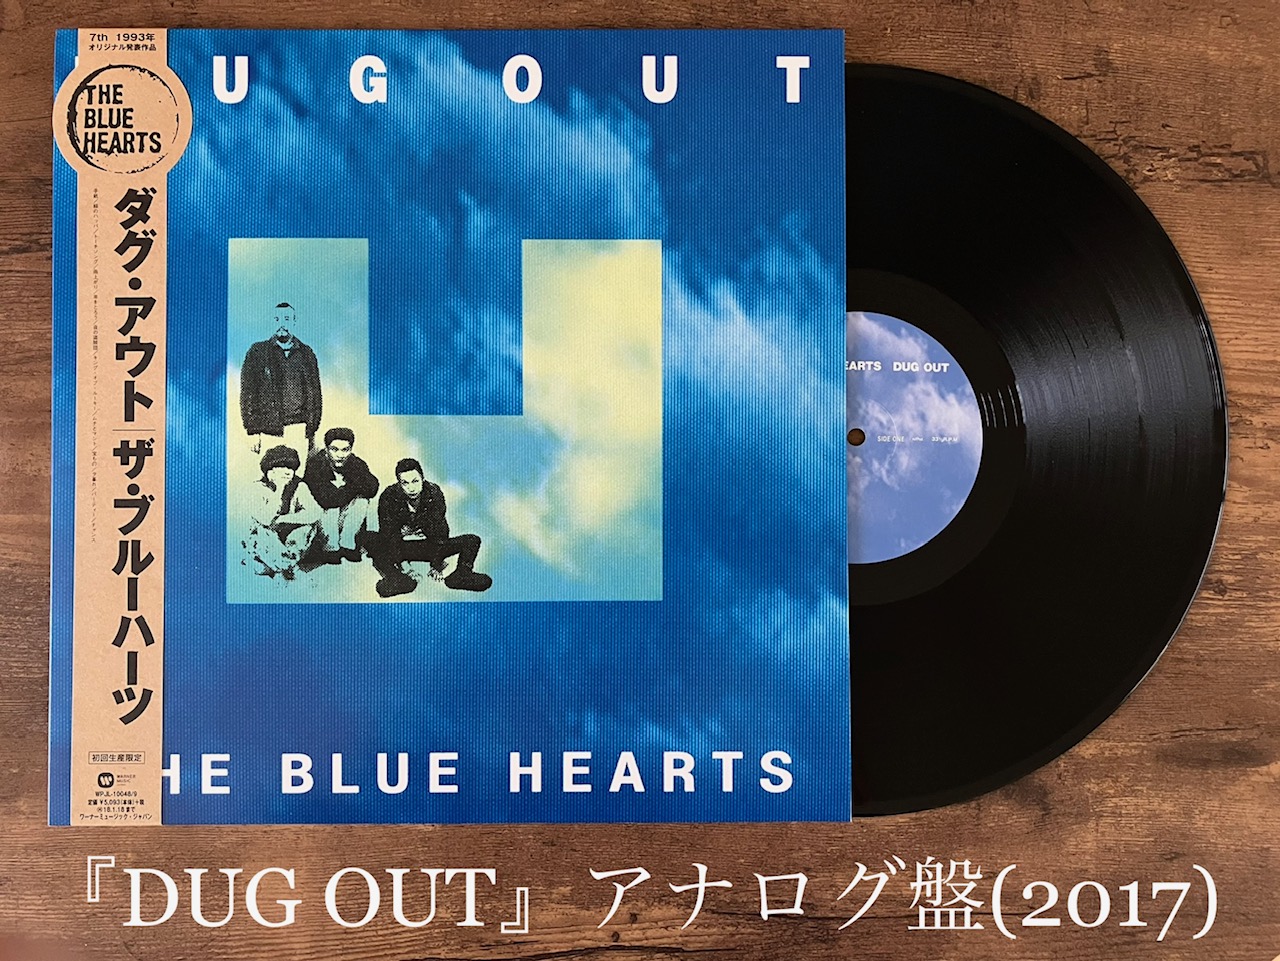 THE BLUE HEARTS オールタイム・シングルス 4枚組 レコード - 邦楽